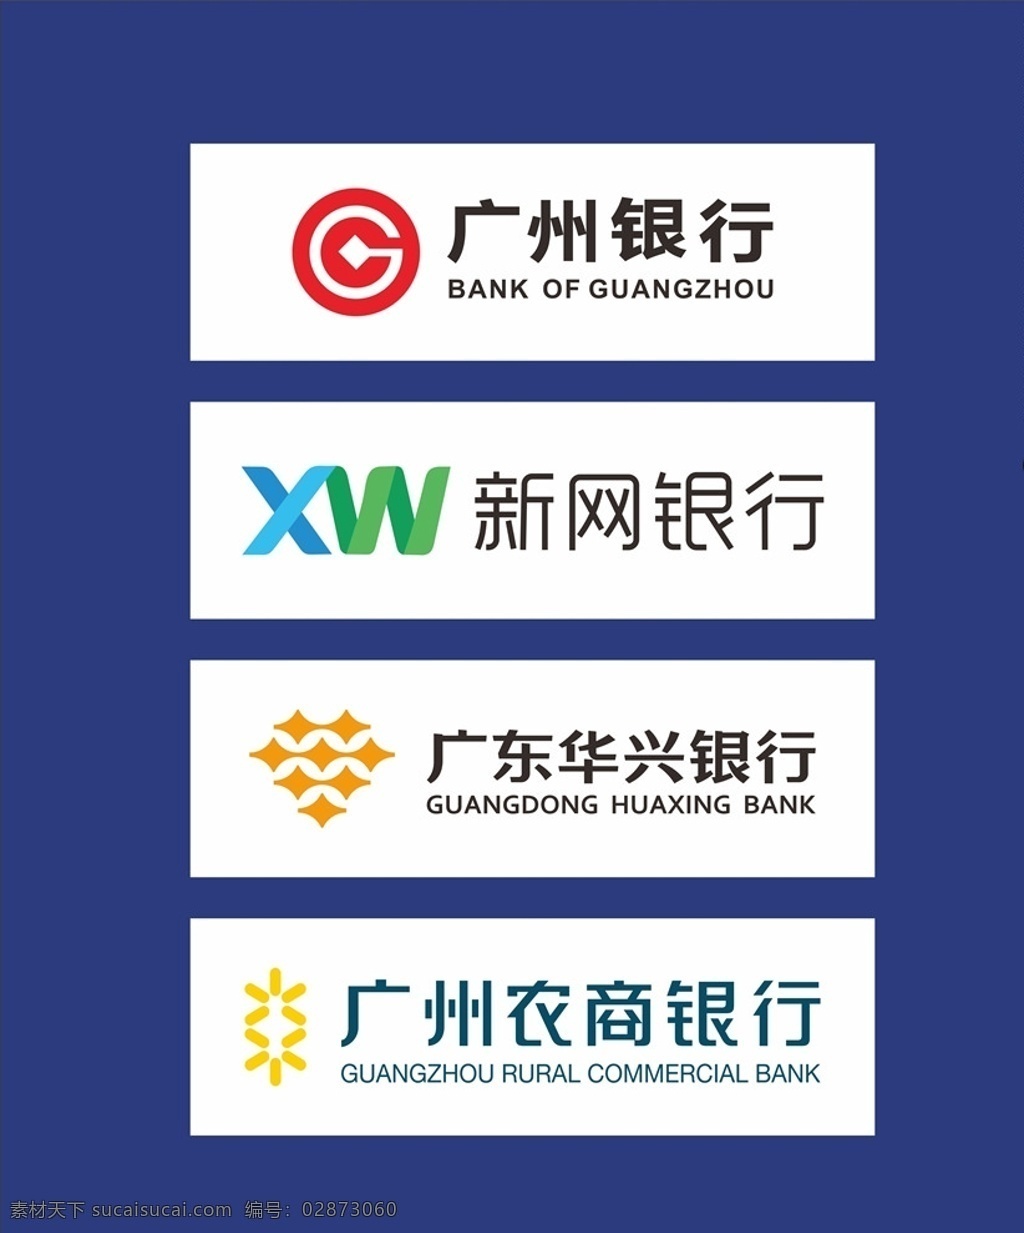 广州银行 新网银行 华兴银行 广东华兴银行 广州农商银行 logo 标志 金融 合作 银行 公共标识标志 元素 标志图标 企业